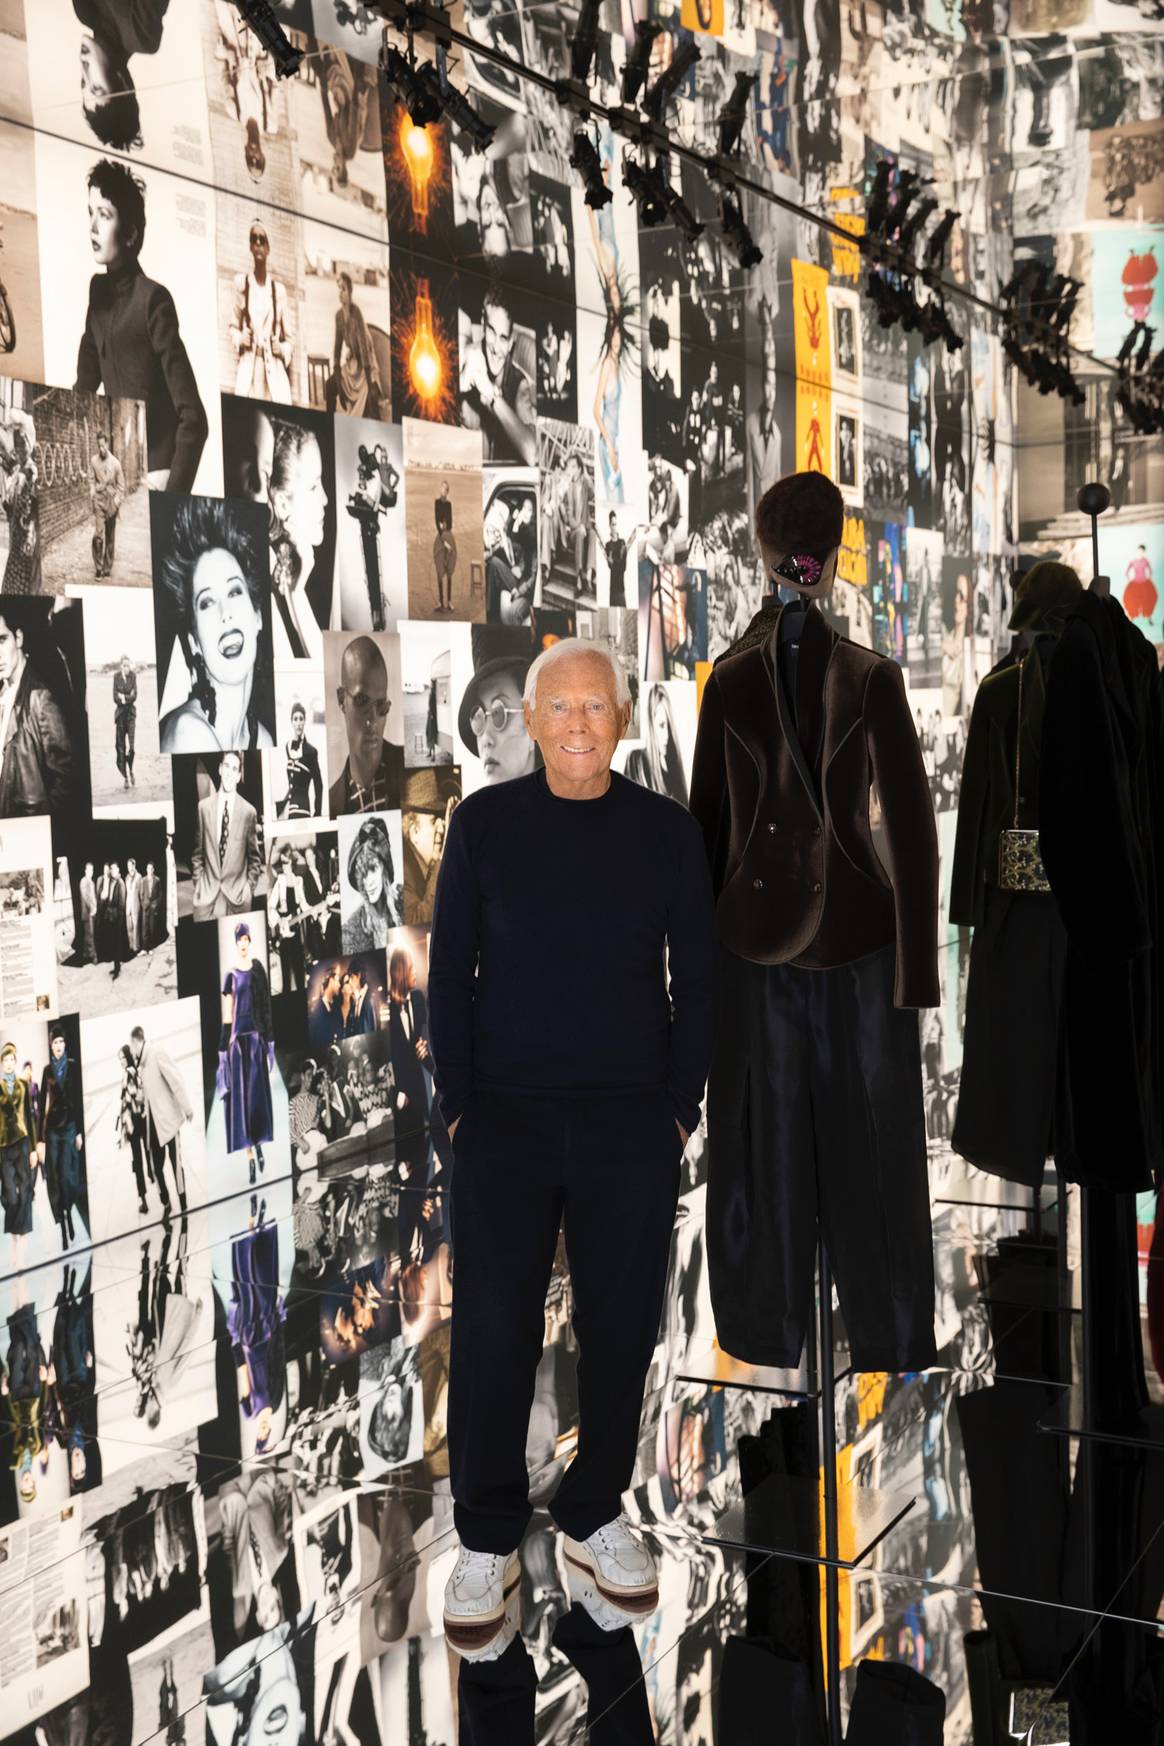 Gründer Giorgio Armani bei der Ausstellung "The way we are" in den Armani Silos | Foto: Giorgio Armani